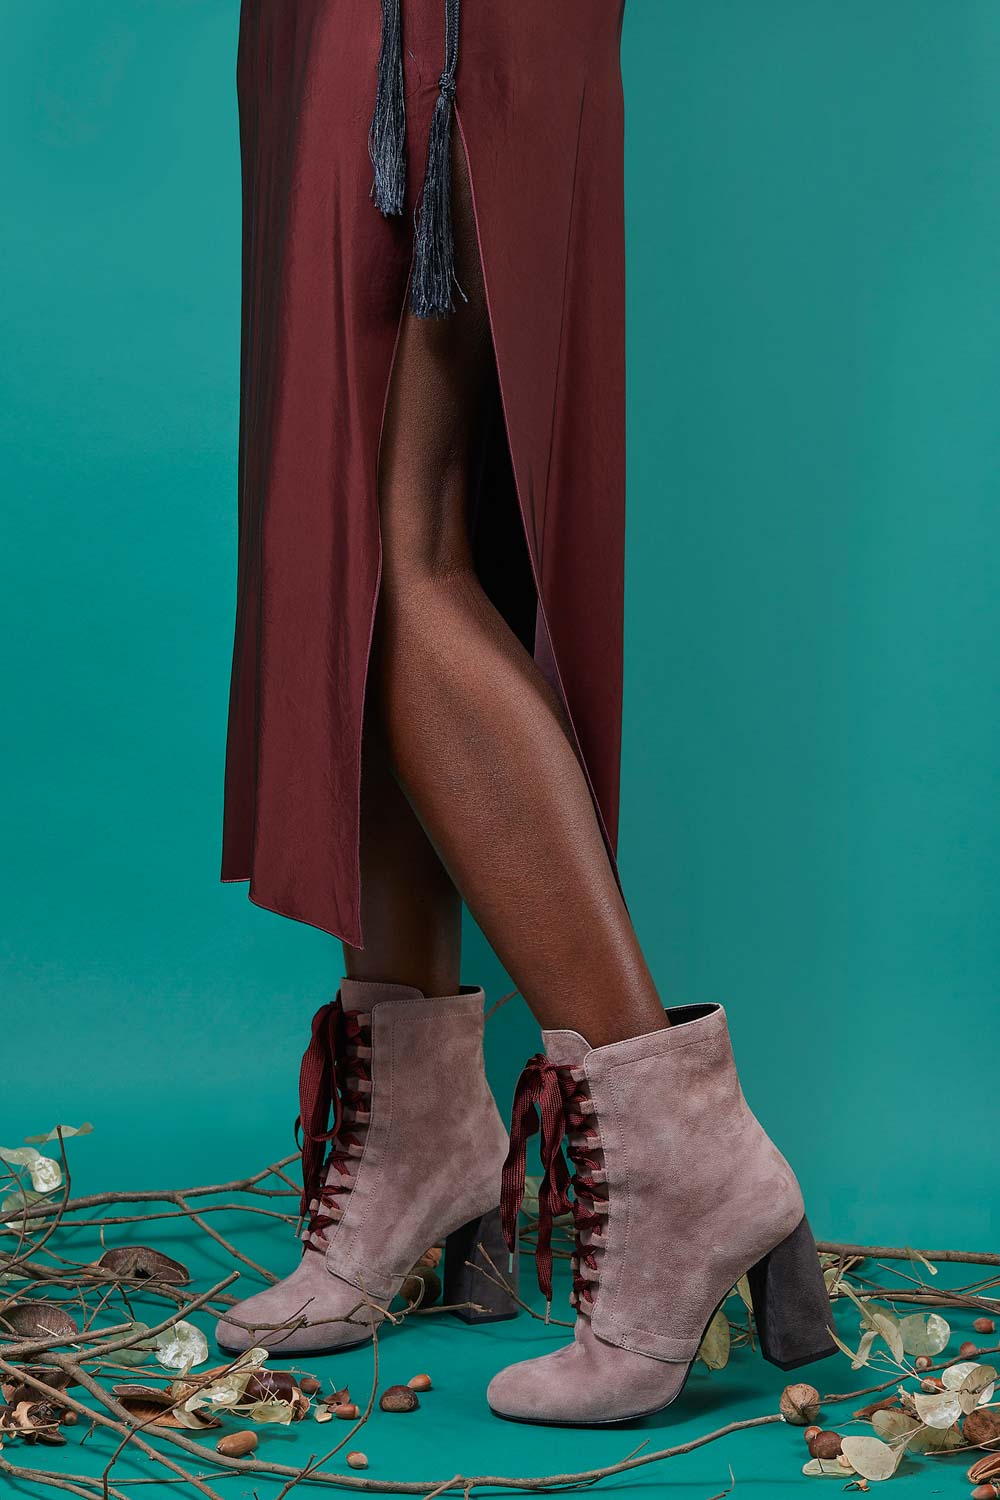 Fotografo pubblicitario per advertising moda fashion donna con calzature e scarpe moda 2019 e fotografo di moda scarpe eleganti con pelle e tessuto in ritratto in studio glamour e fashion con modelle di colore.